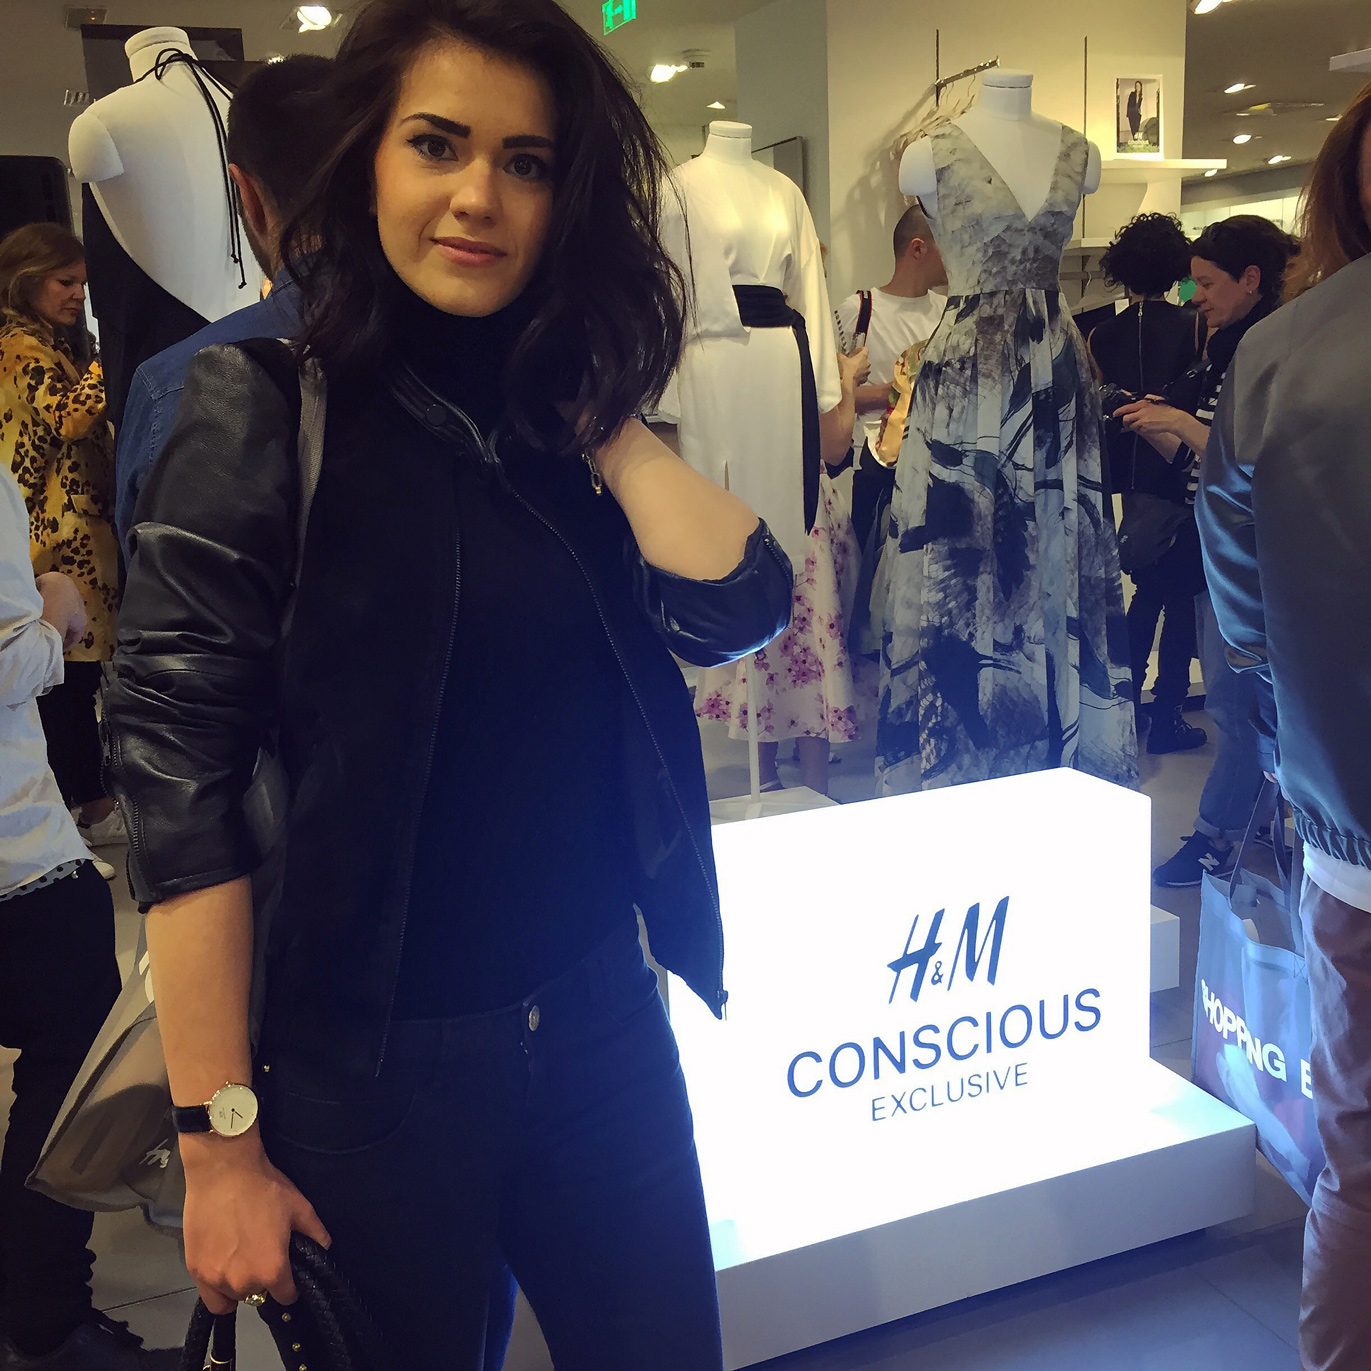 H&M Conscious Exclusive event